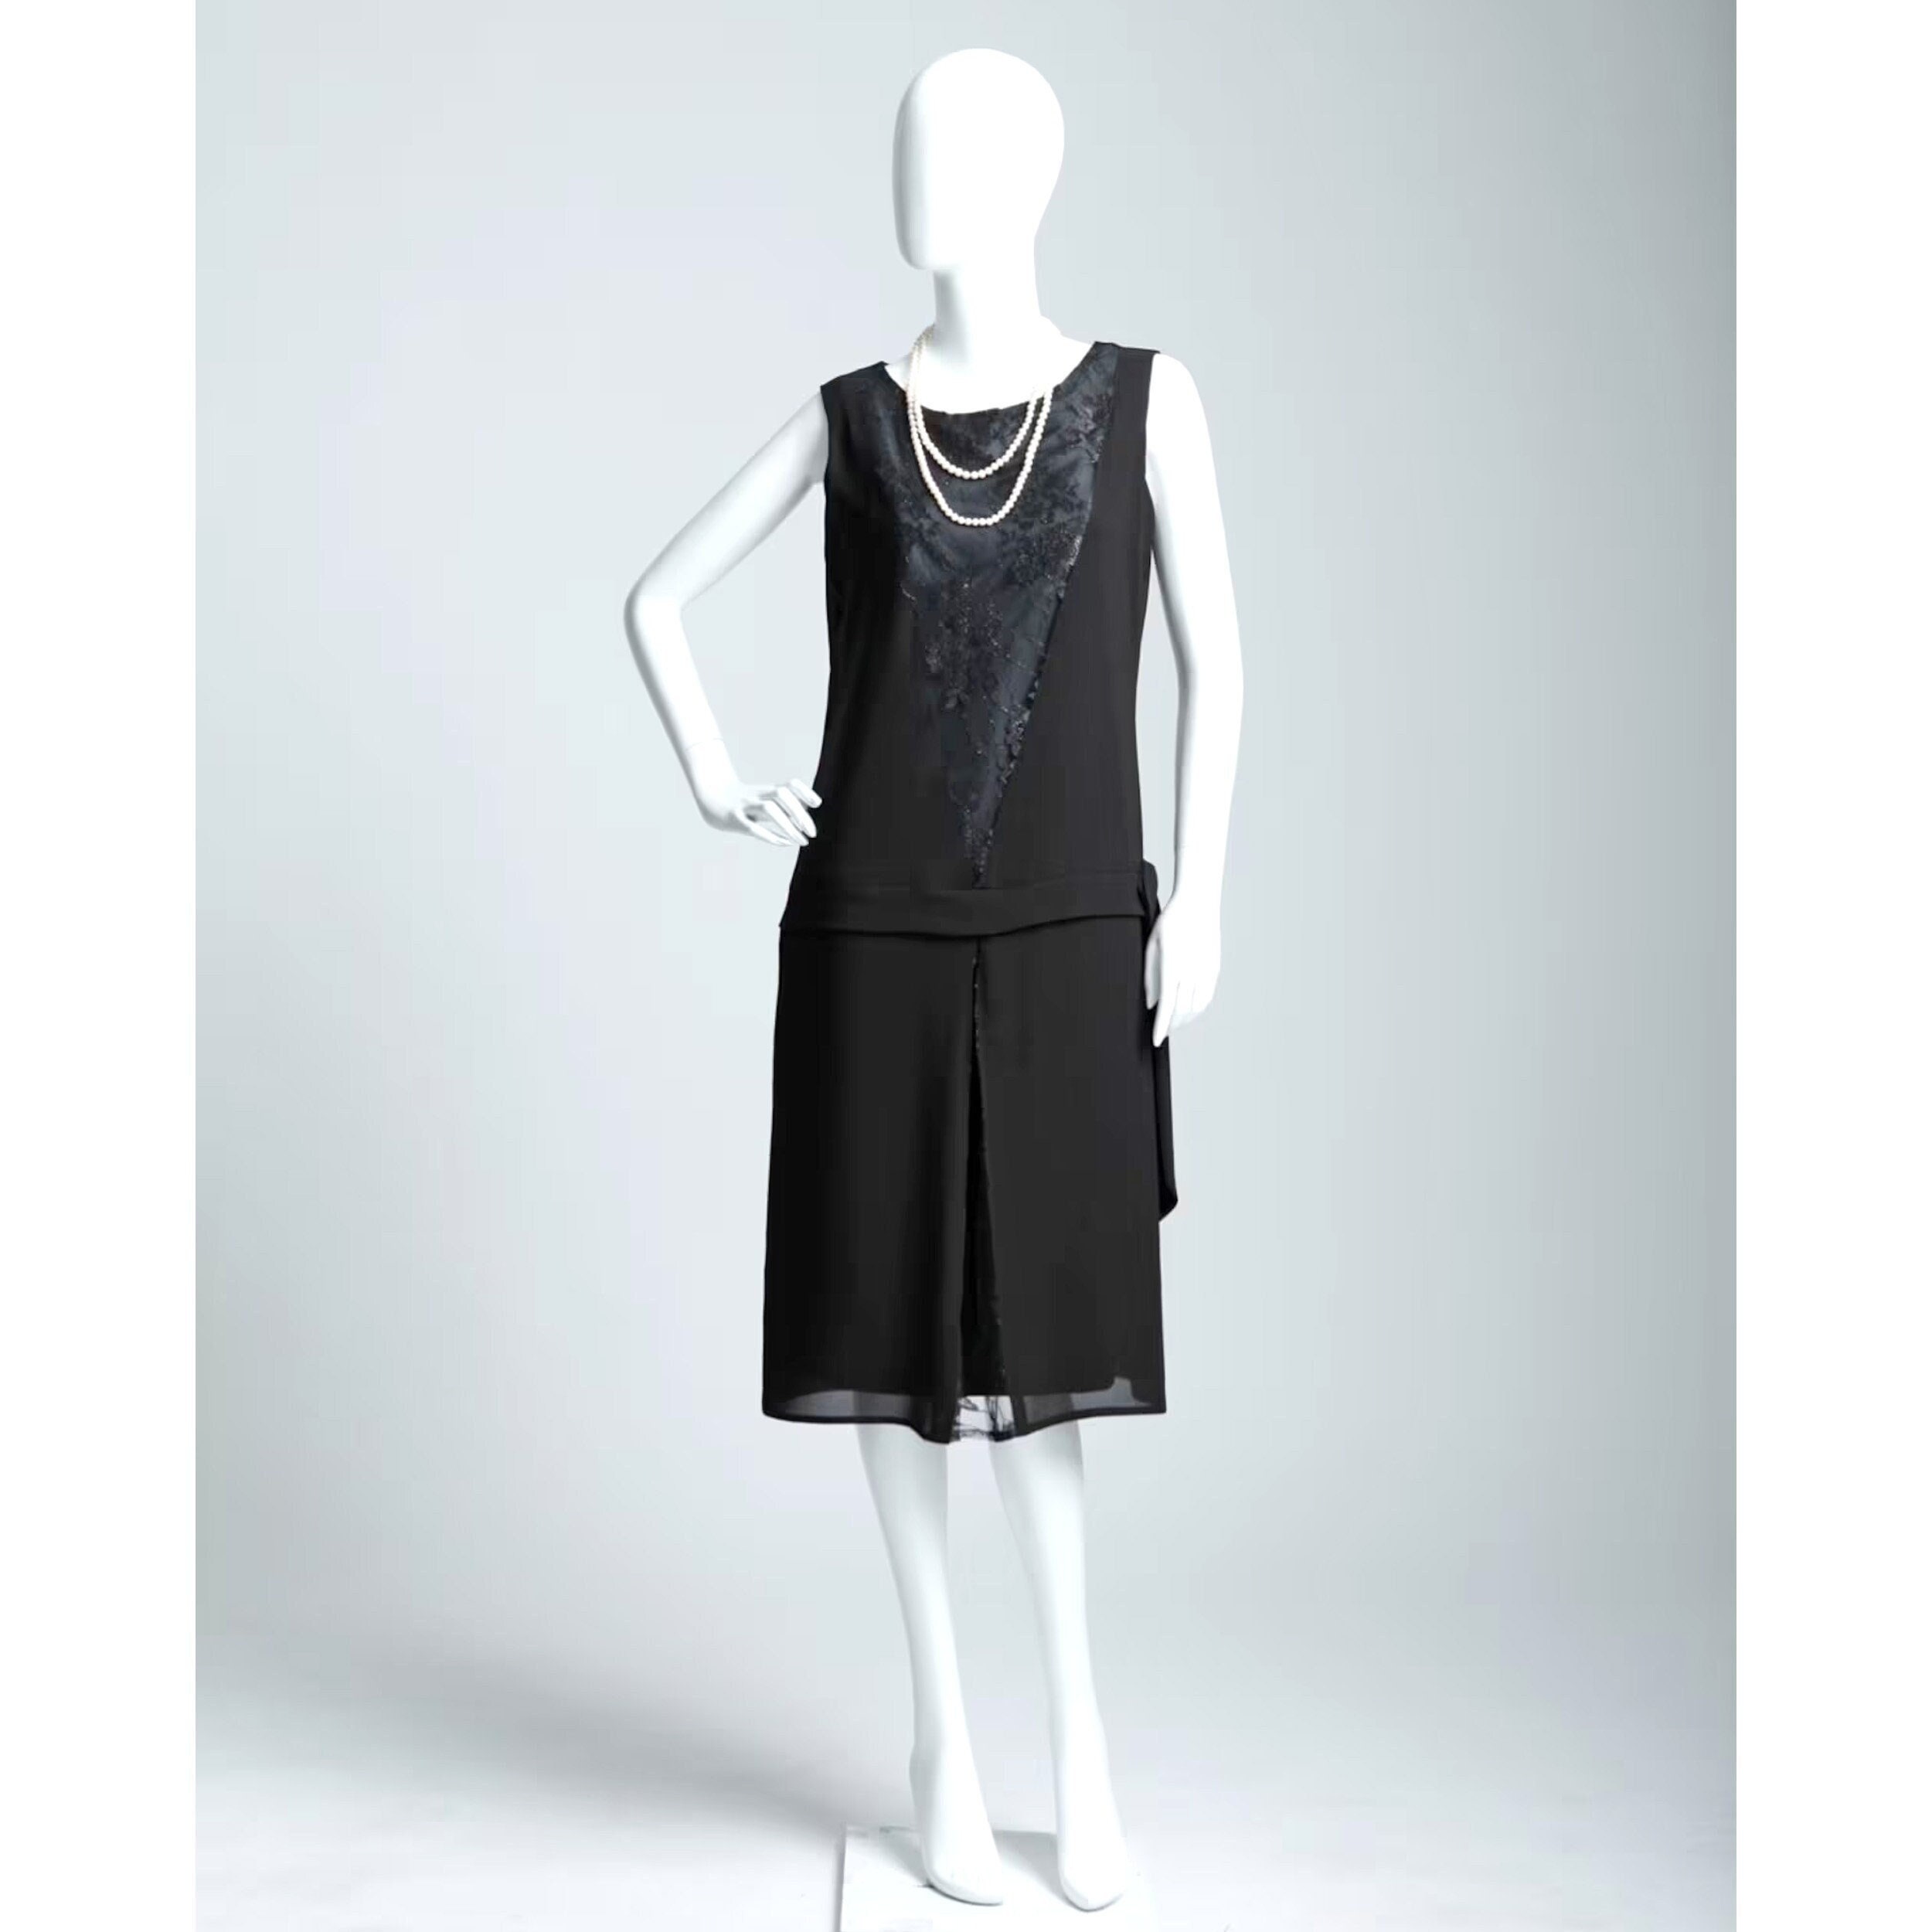 Sleeveless Black Chiffon and Lace Flapper Dress 1920s Dress 